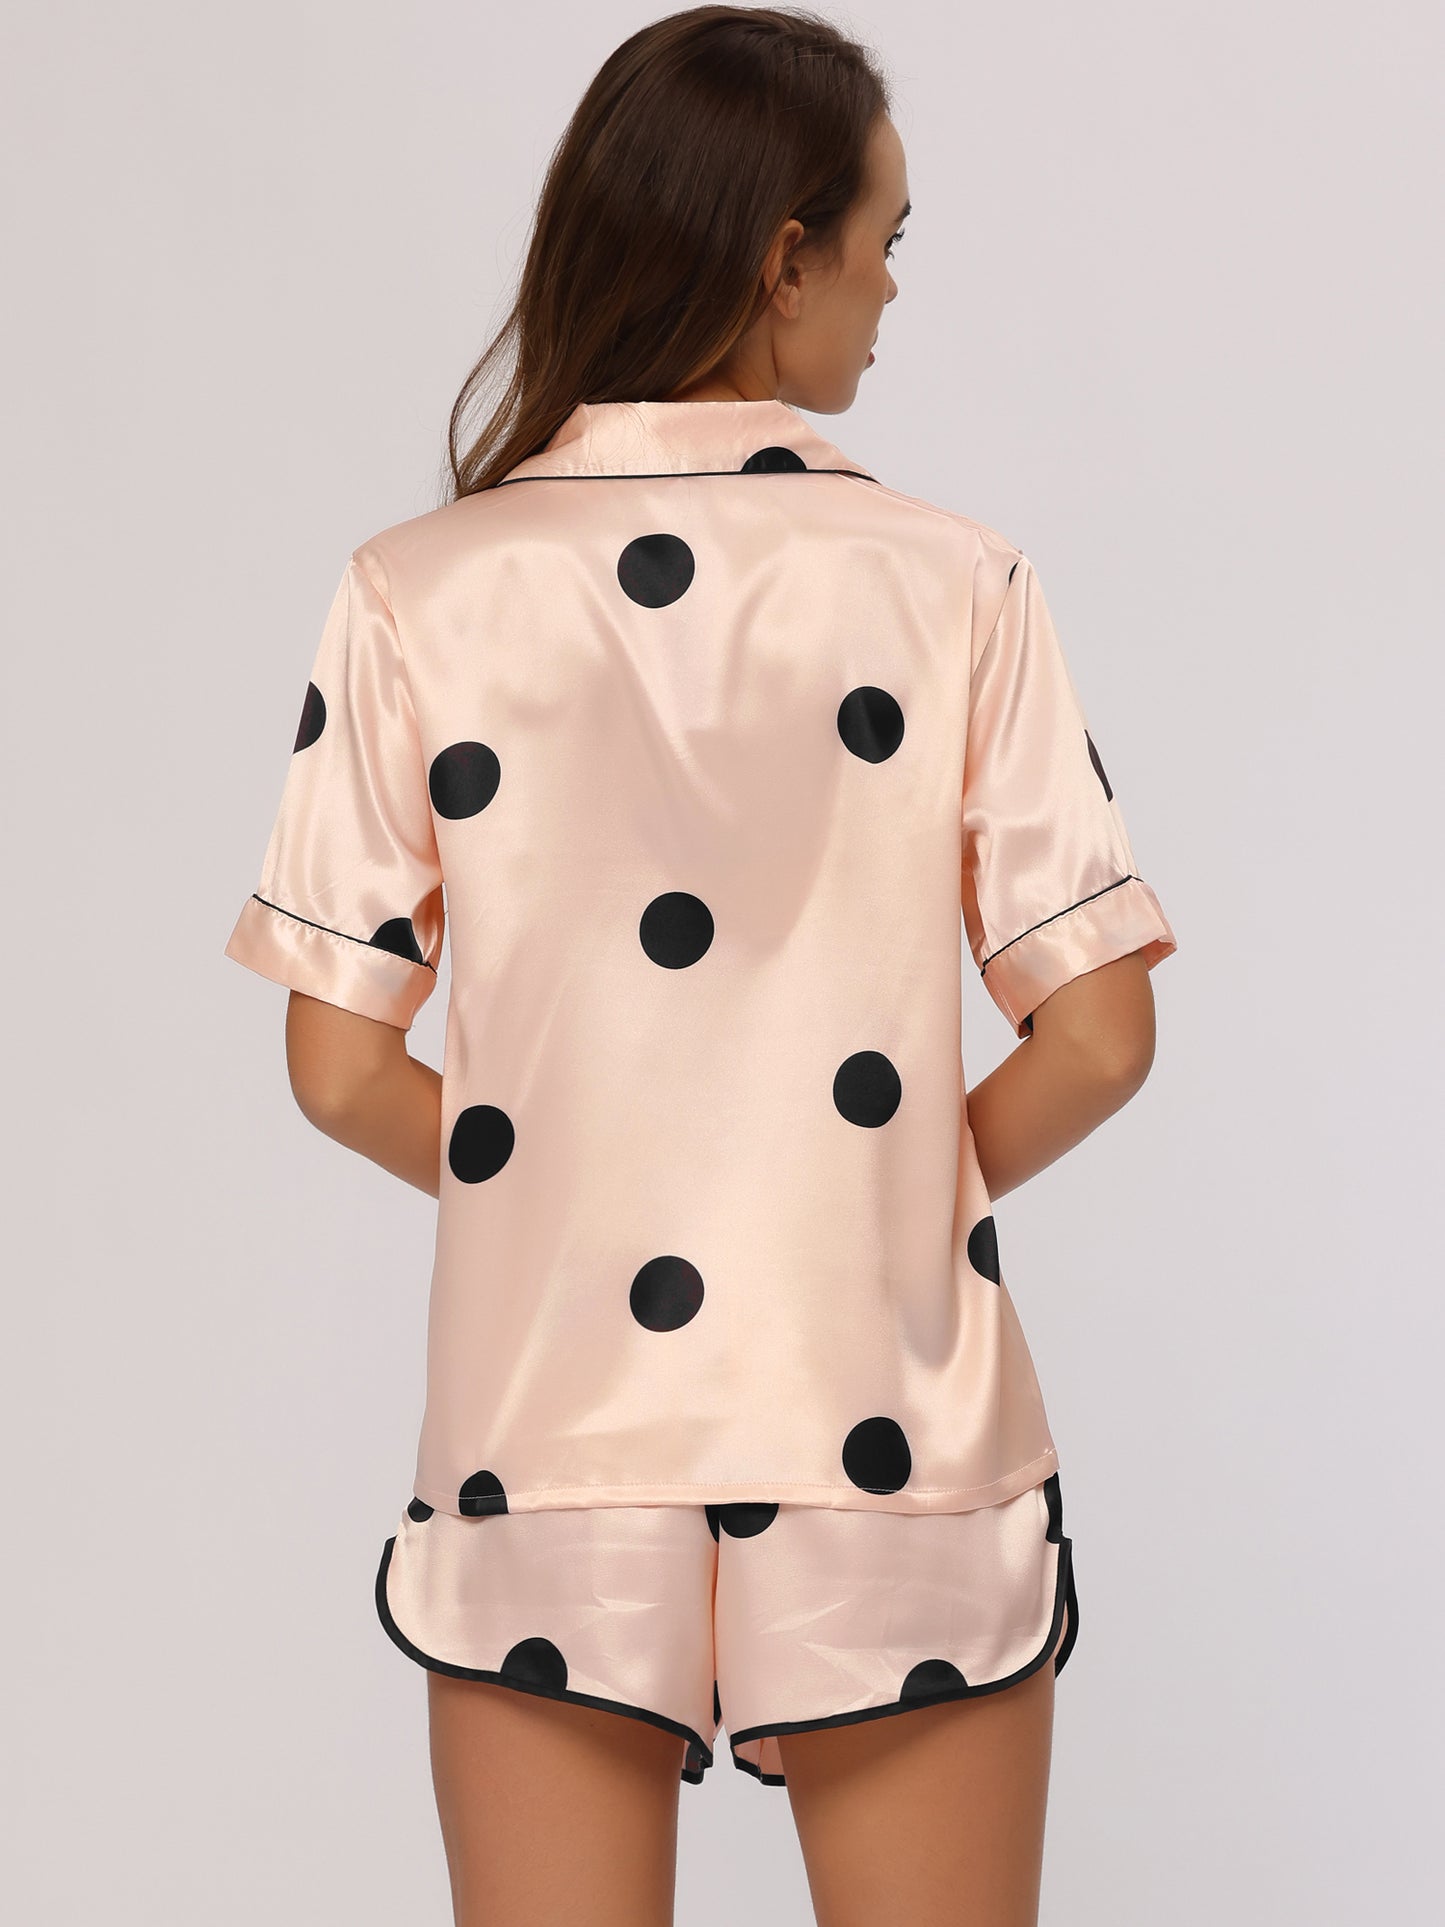 cheibear Satin 2pcs Lounge Sleepwear T-Shirt and Shorts Polka Dots Pajama Sets Champagne Pink